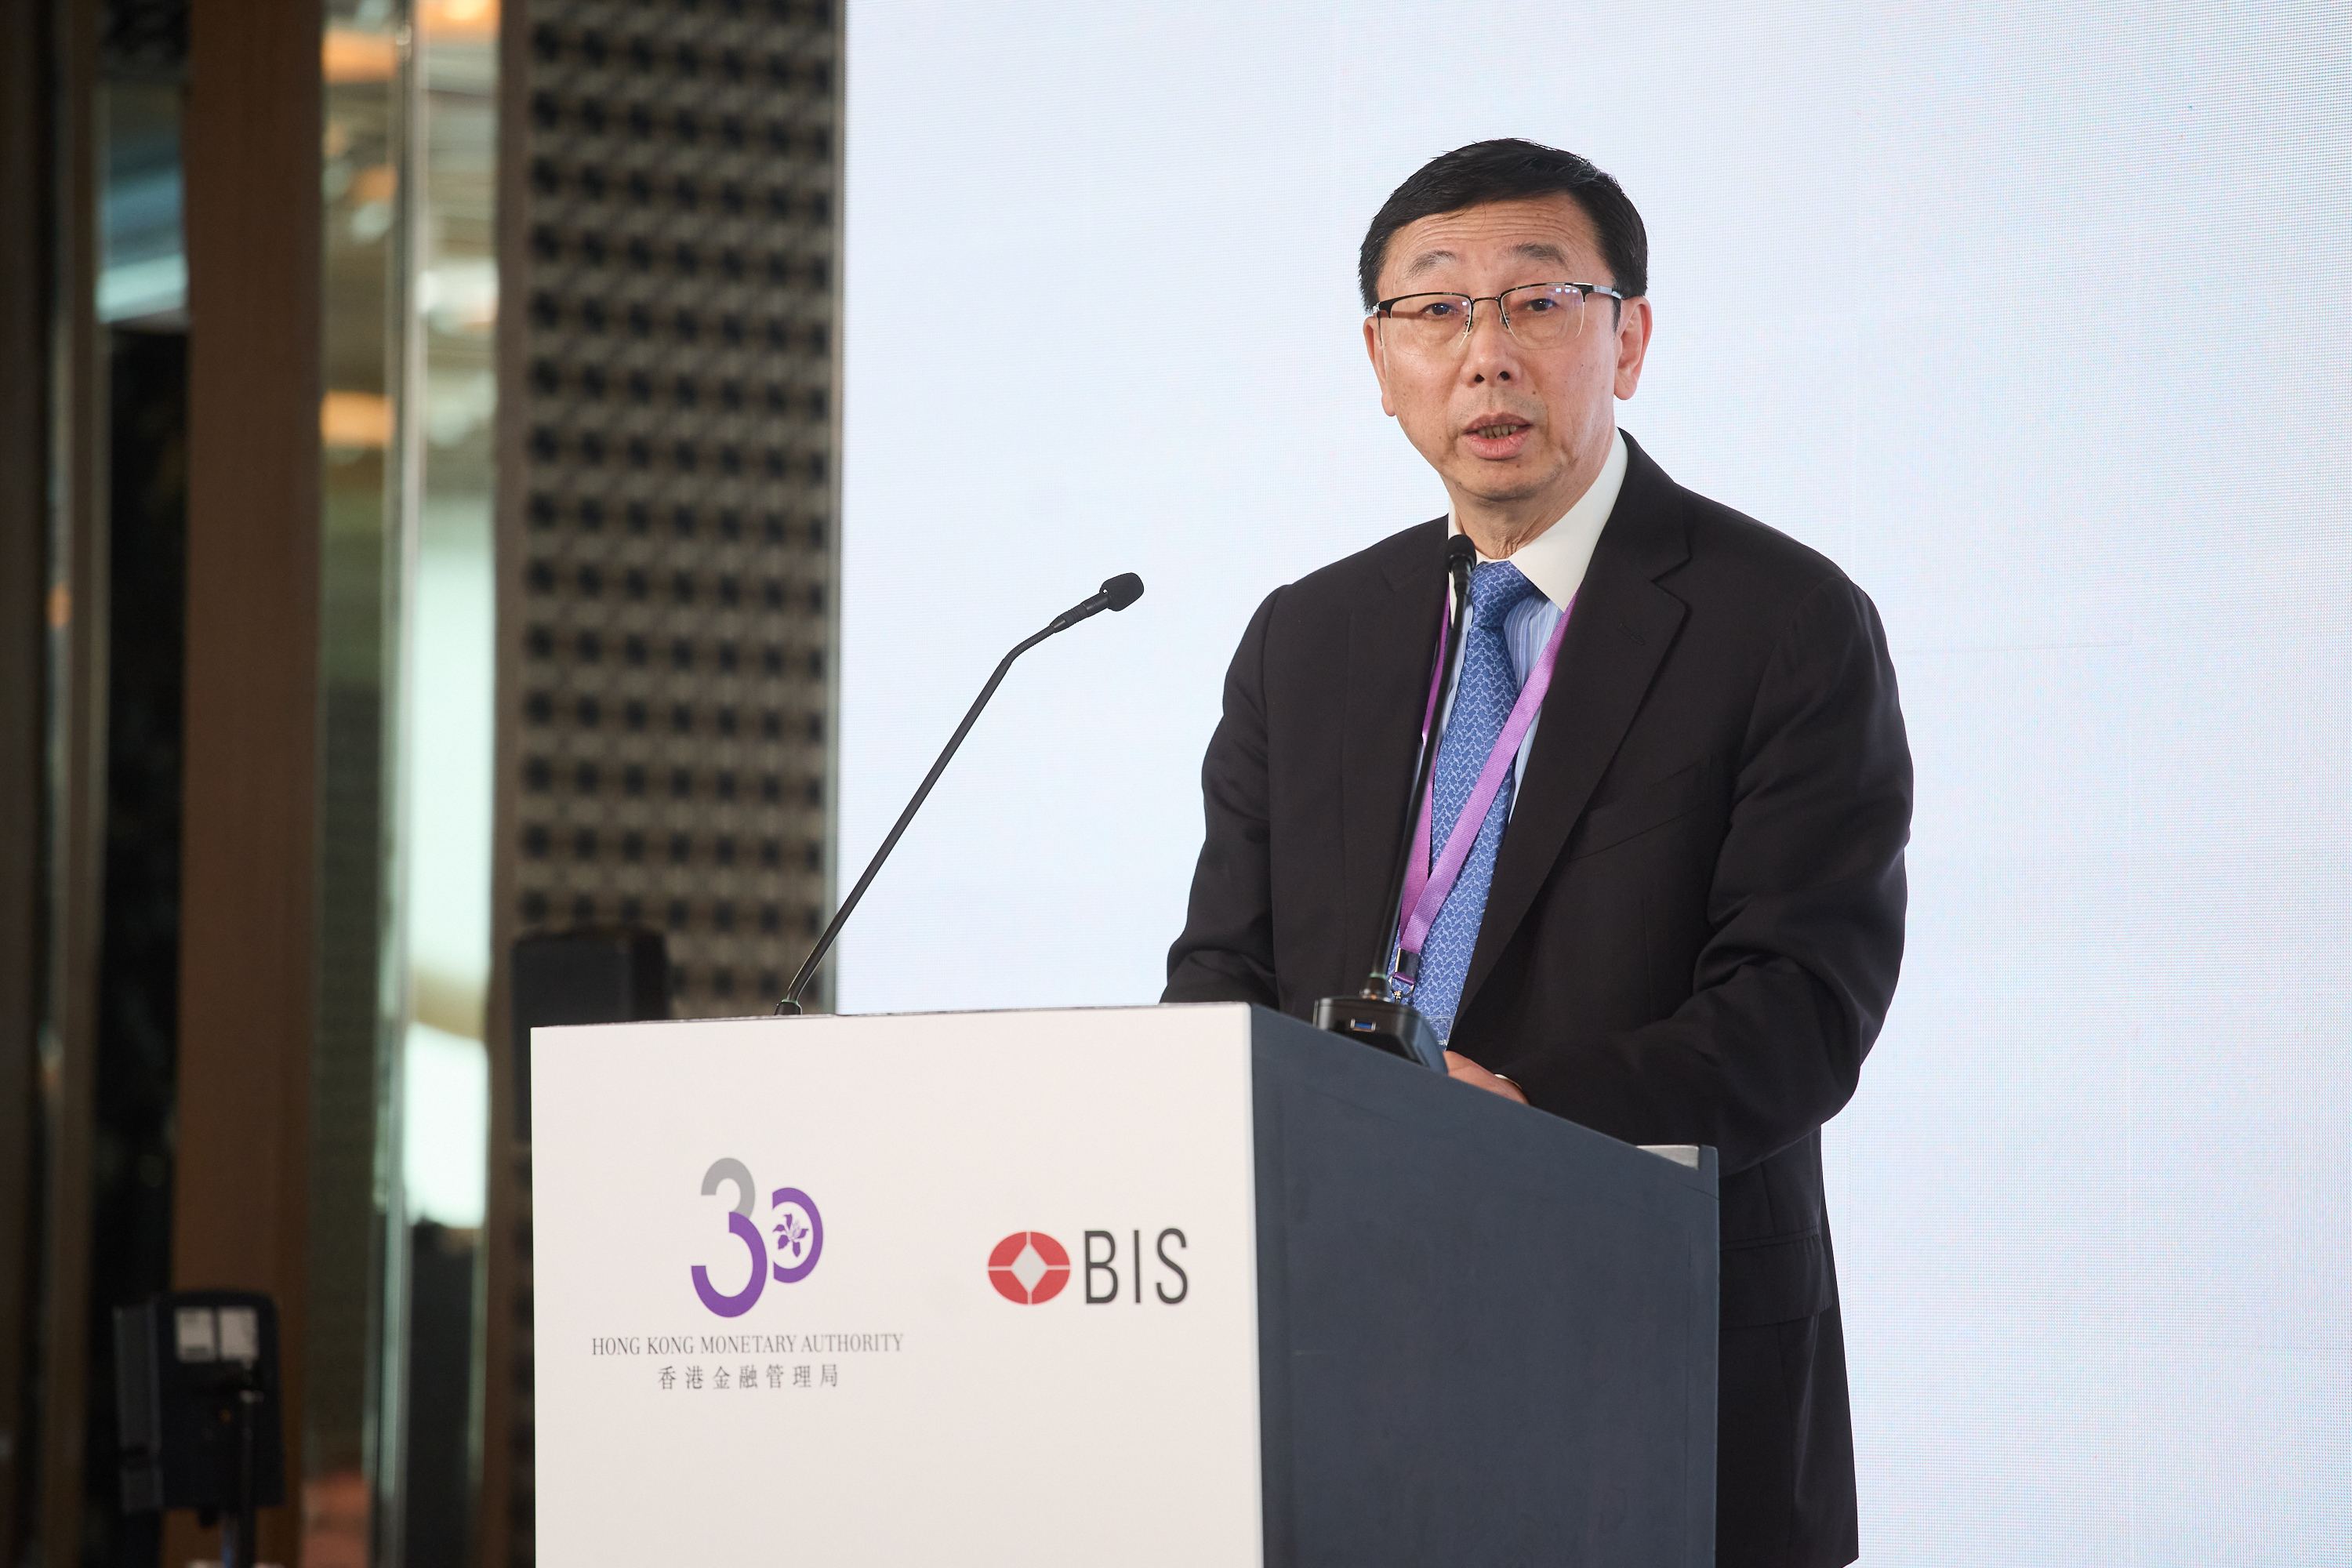 国际结算银行亚太地区首席代表张涛致闭幕辞。